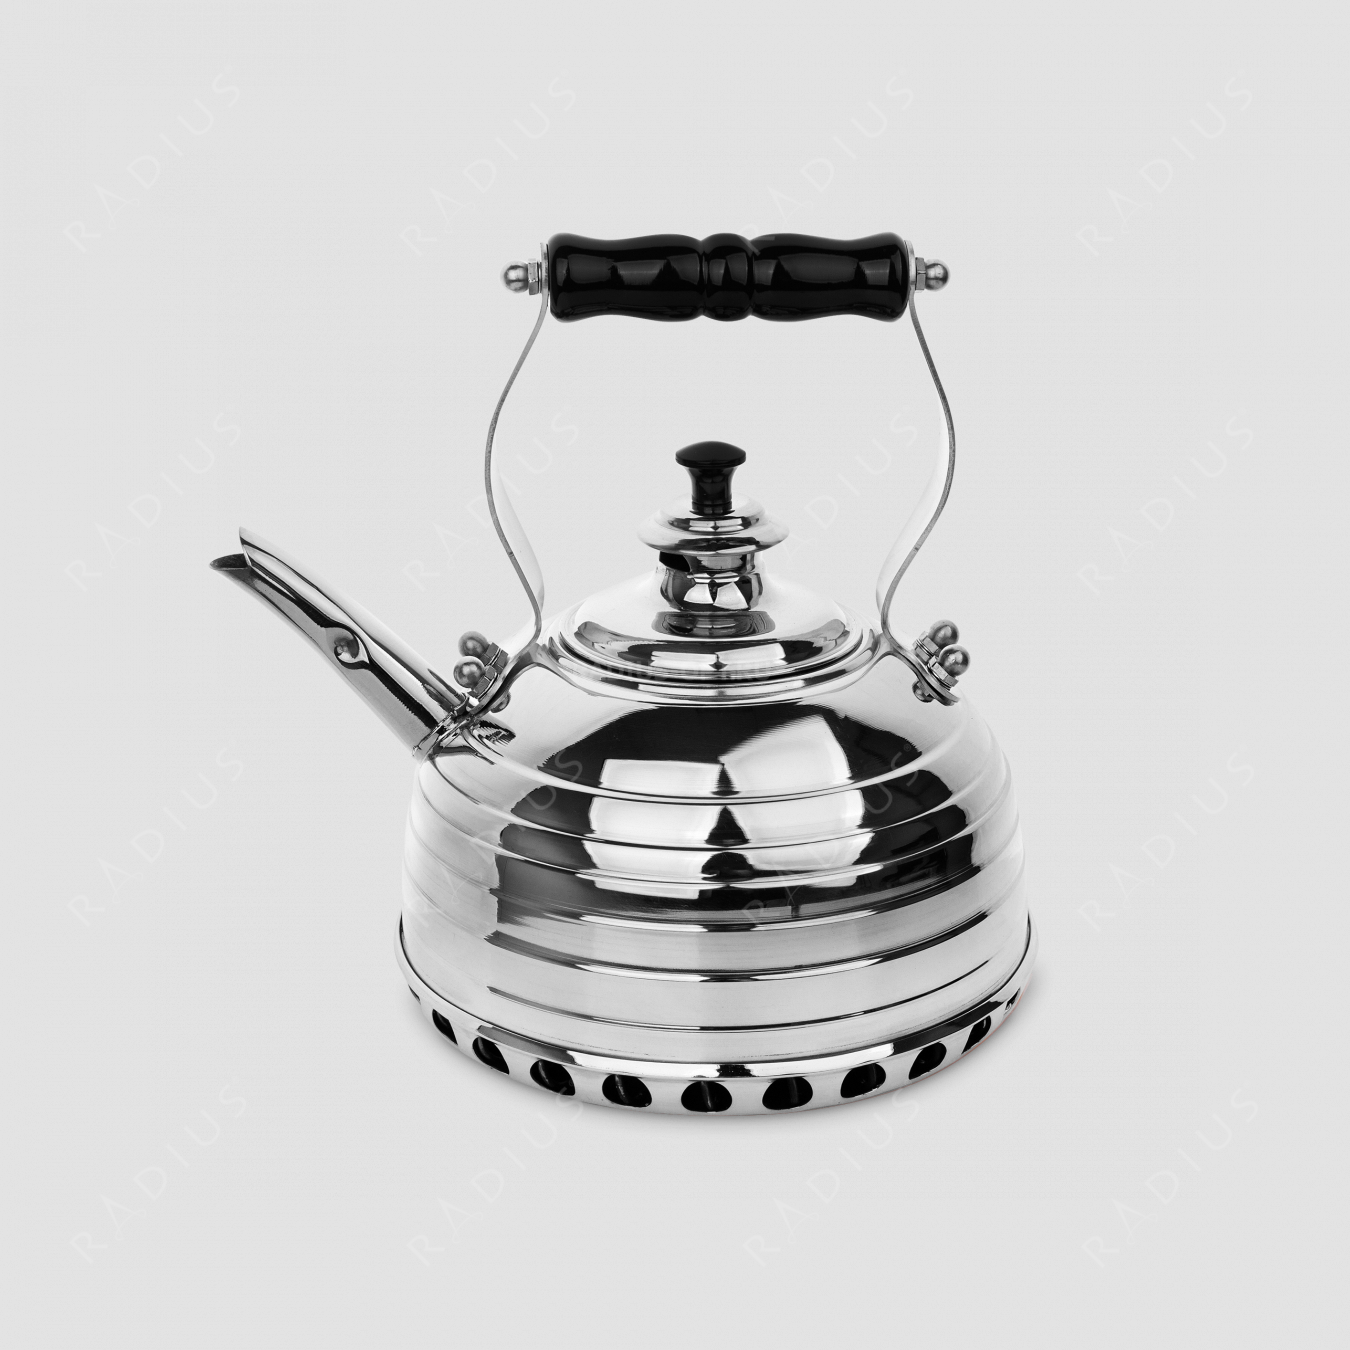 Чайник для плиты (газ) эдвардианской ручной работы, медь с хромированной отделкой, объем 1,7 л, серия Beehive, RICHMOND, Великобритания